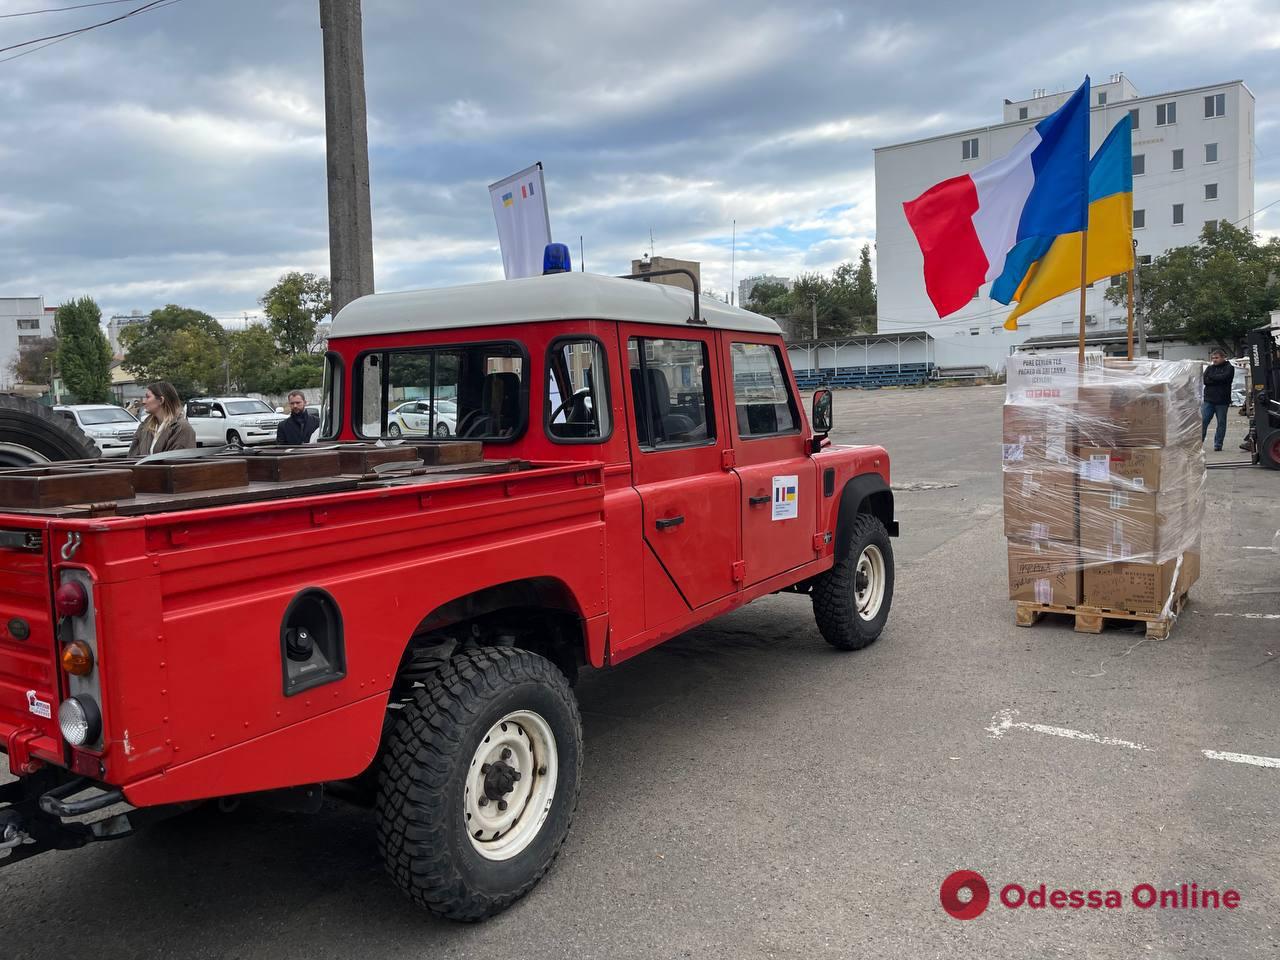 Посол Франции в Украине передал Одессе гуманитарную помощь (фото, видео)